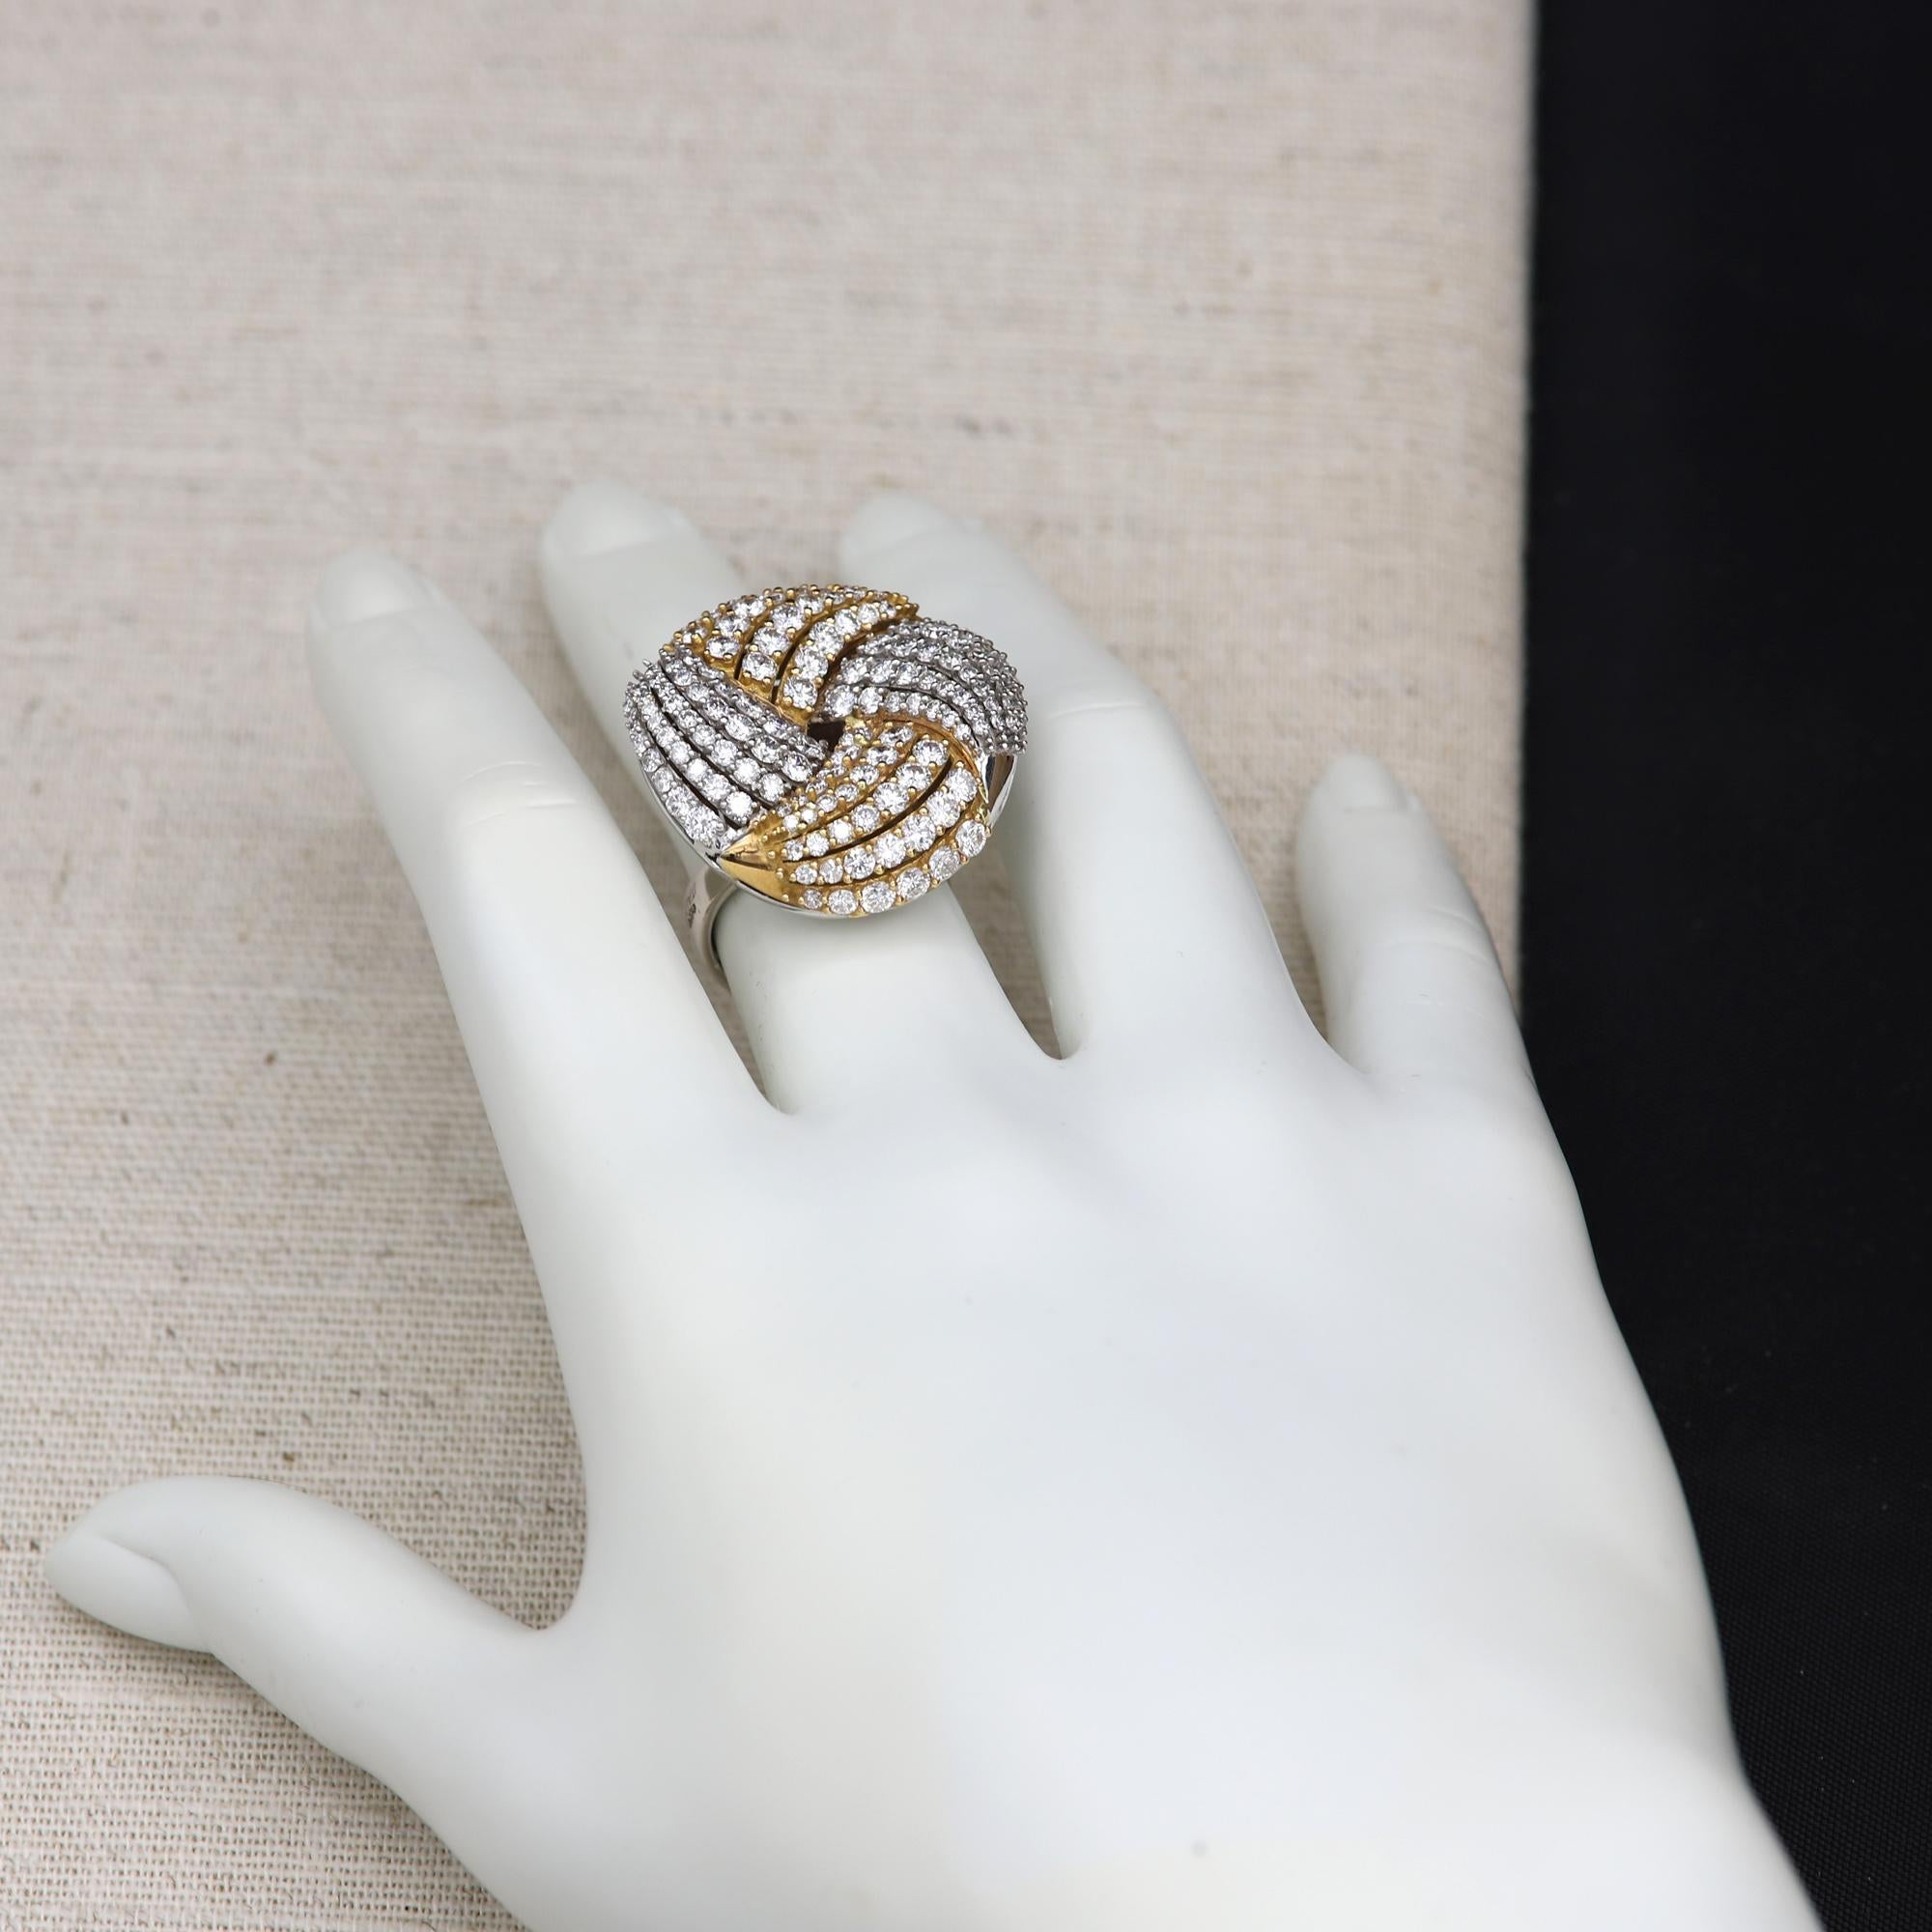 Women's Large Cocktail Diamond Ring 18 Karat Gold Two-Tone Big Diamond Ring